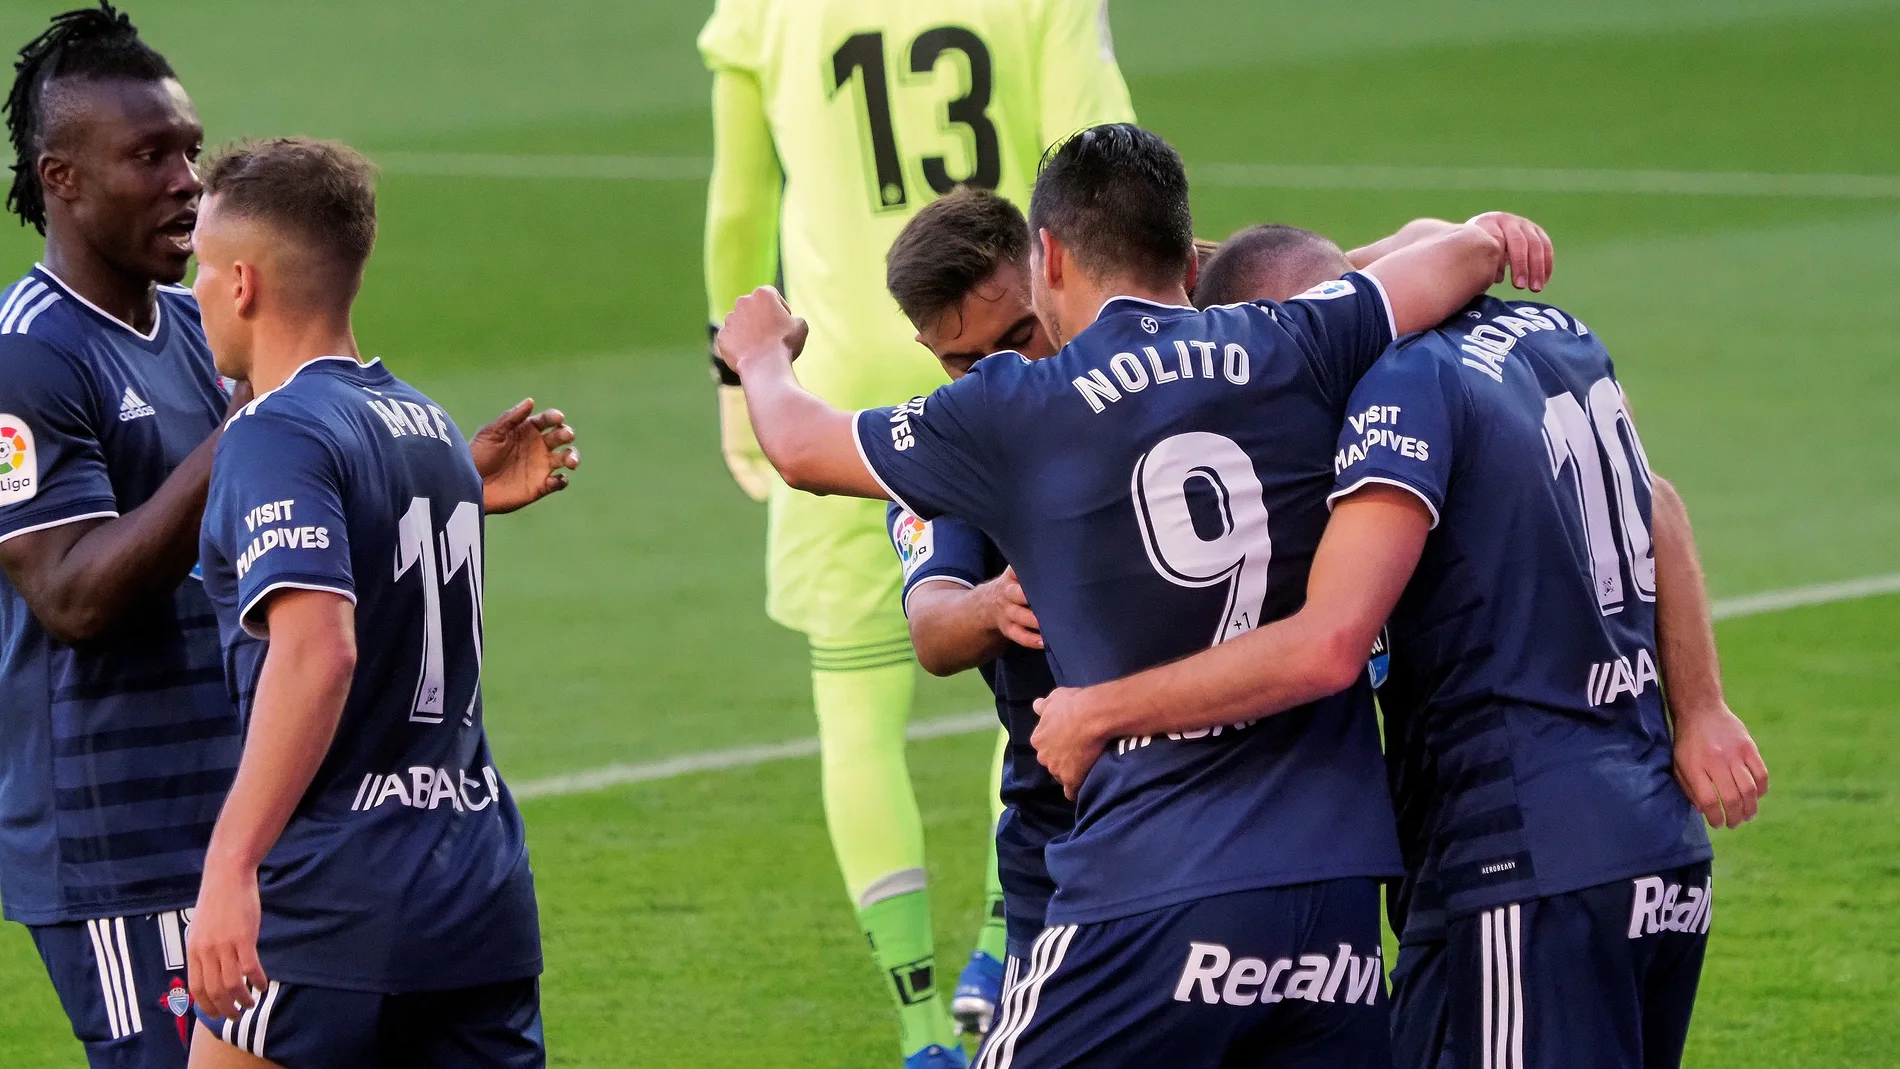 El delantero del Celta Iago Aspas (d) celebra con sus compañeros, su gol ante el Valladolid durante el partido de la tercera jornada de Liga que disputan en el estadio José Zorrilla de Valladolid.